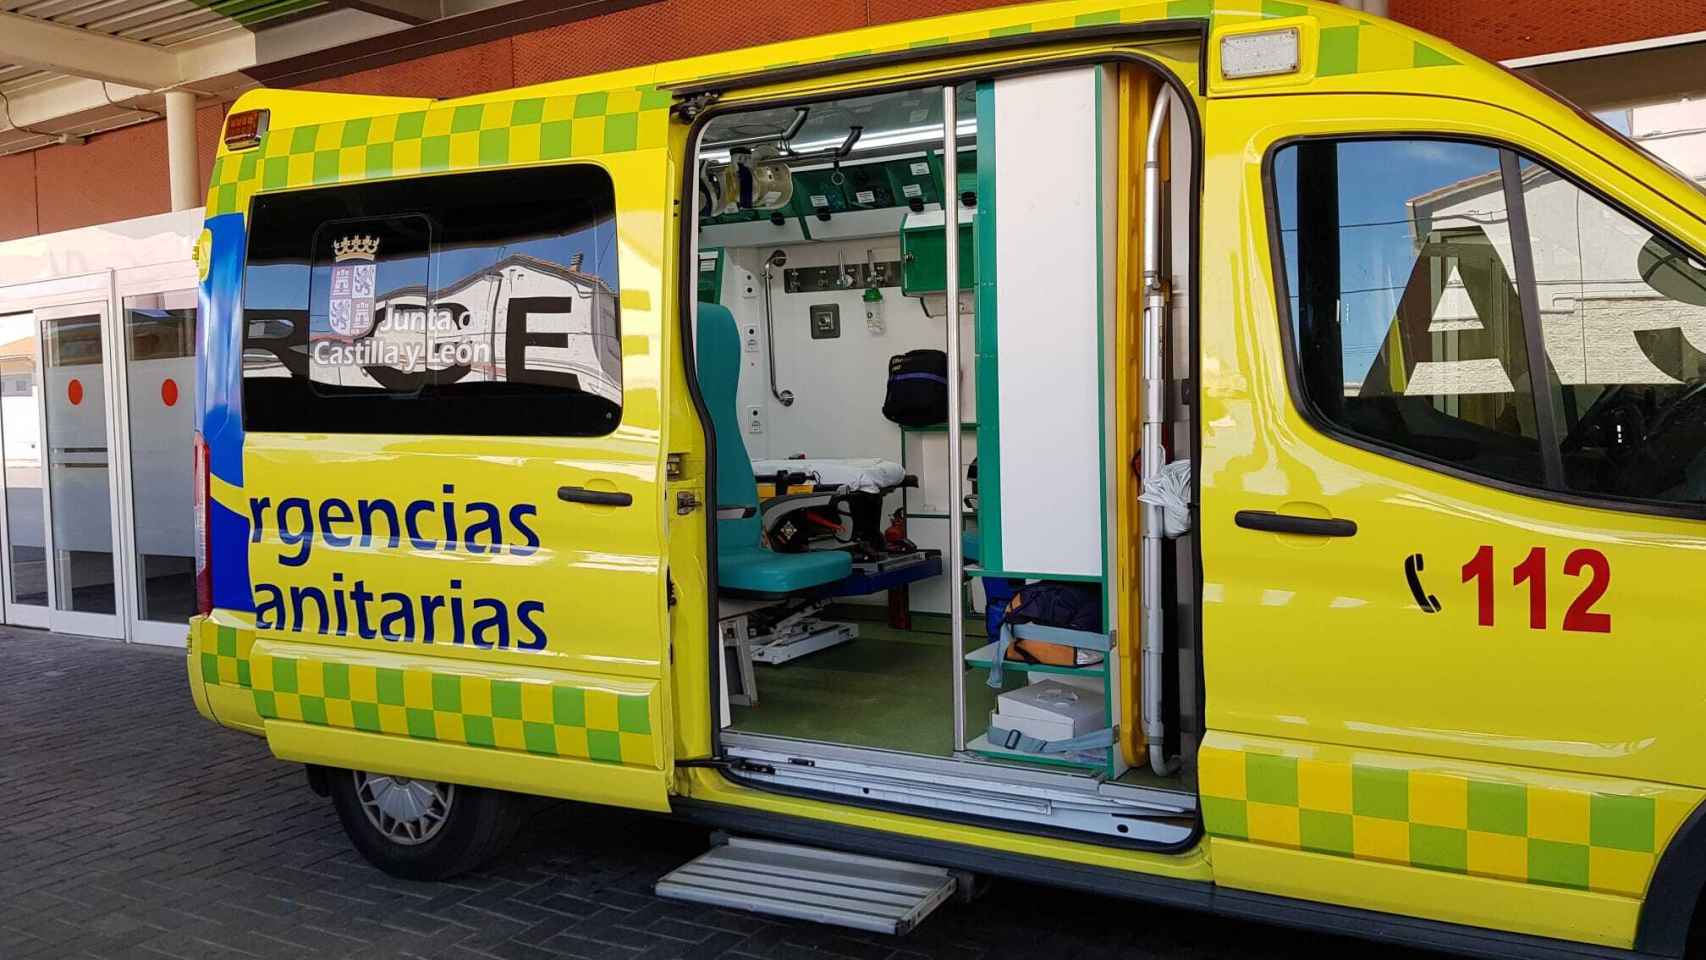 Ambulancia del 112 en las Urgencias del Hospital Virgen de la Zamora